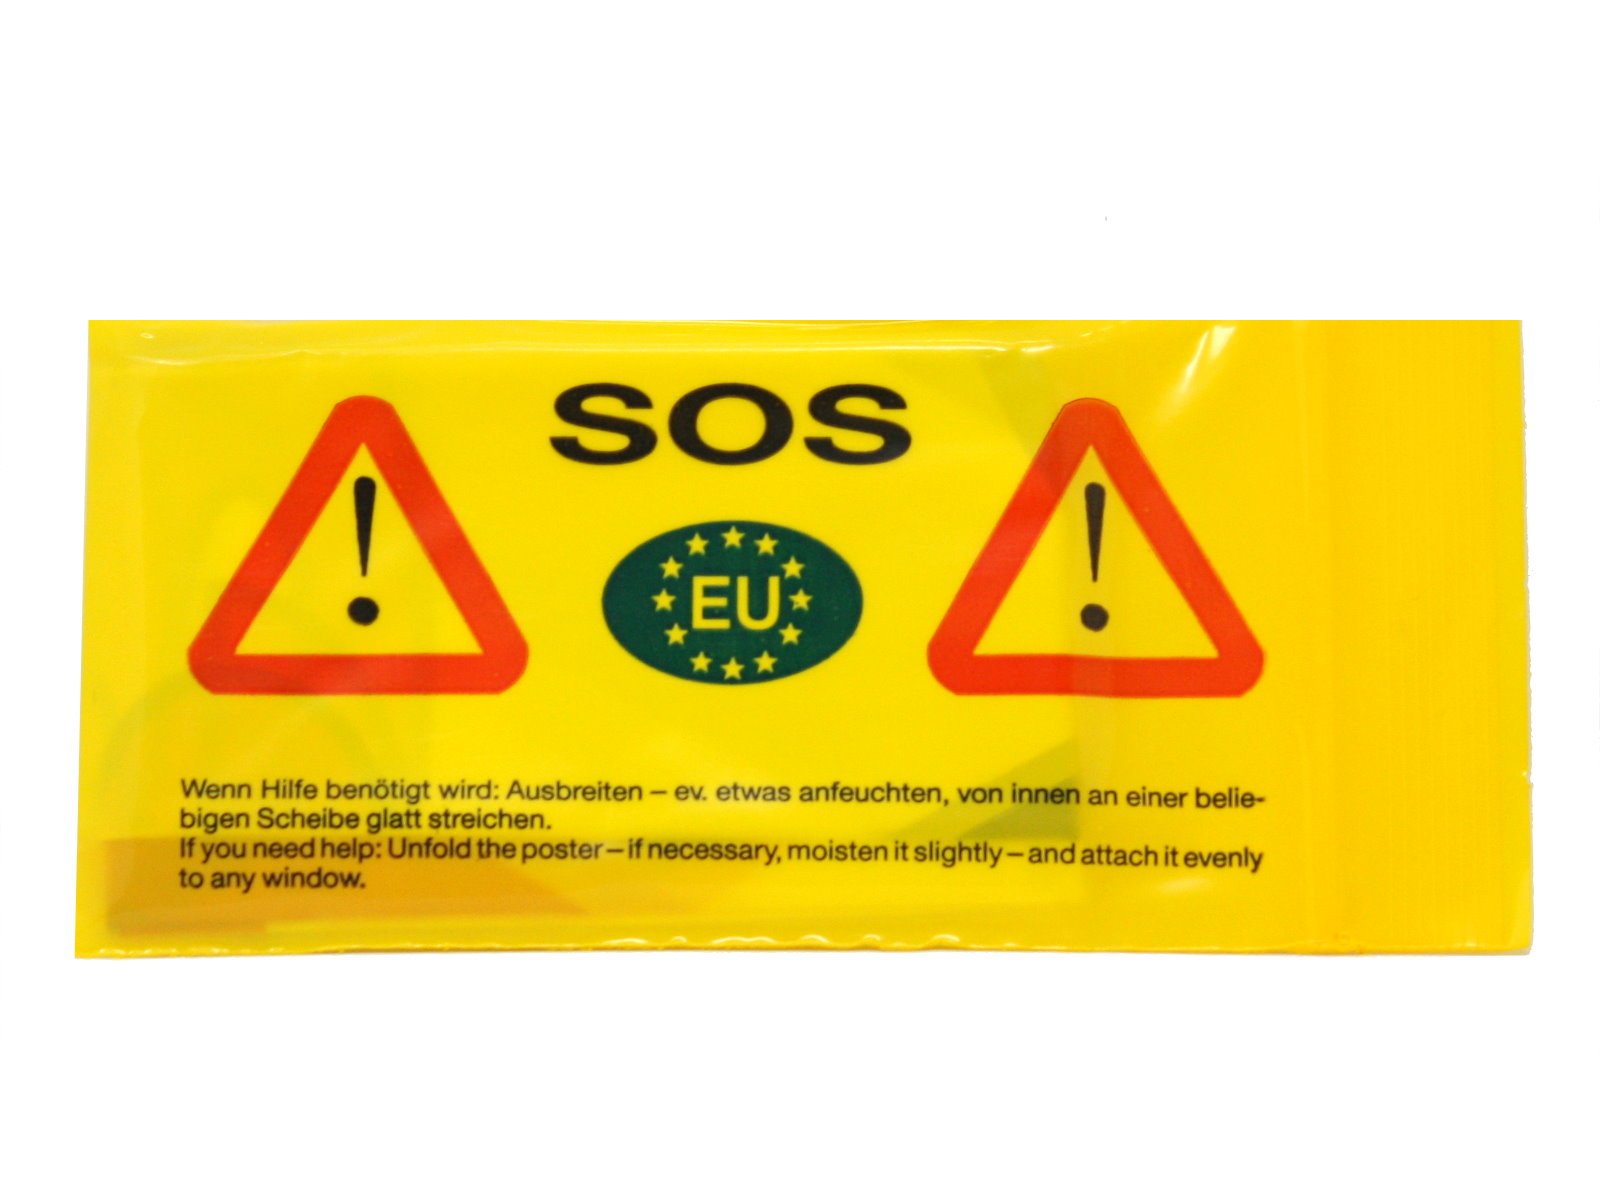 SOS Warntransparent